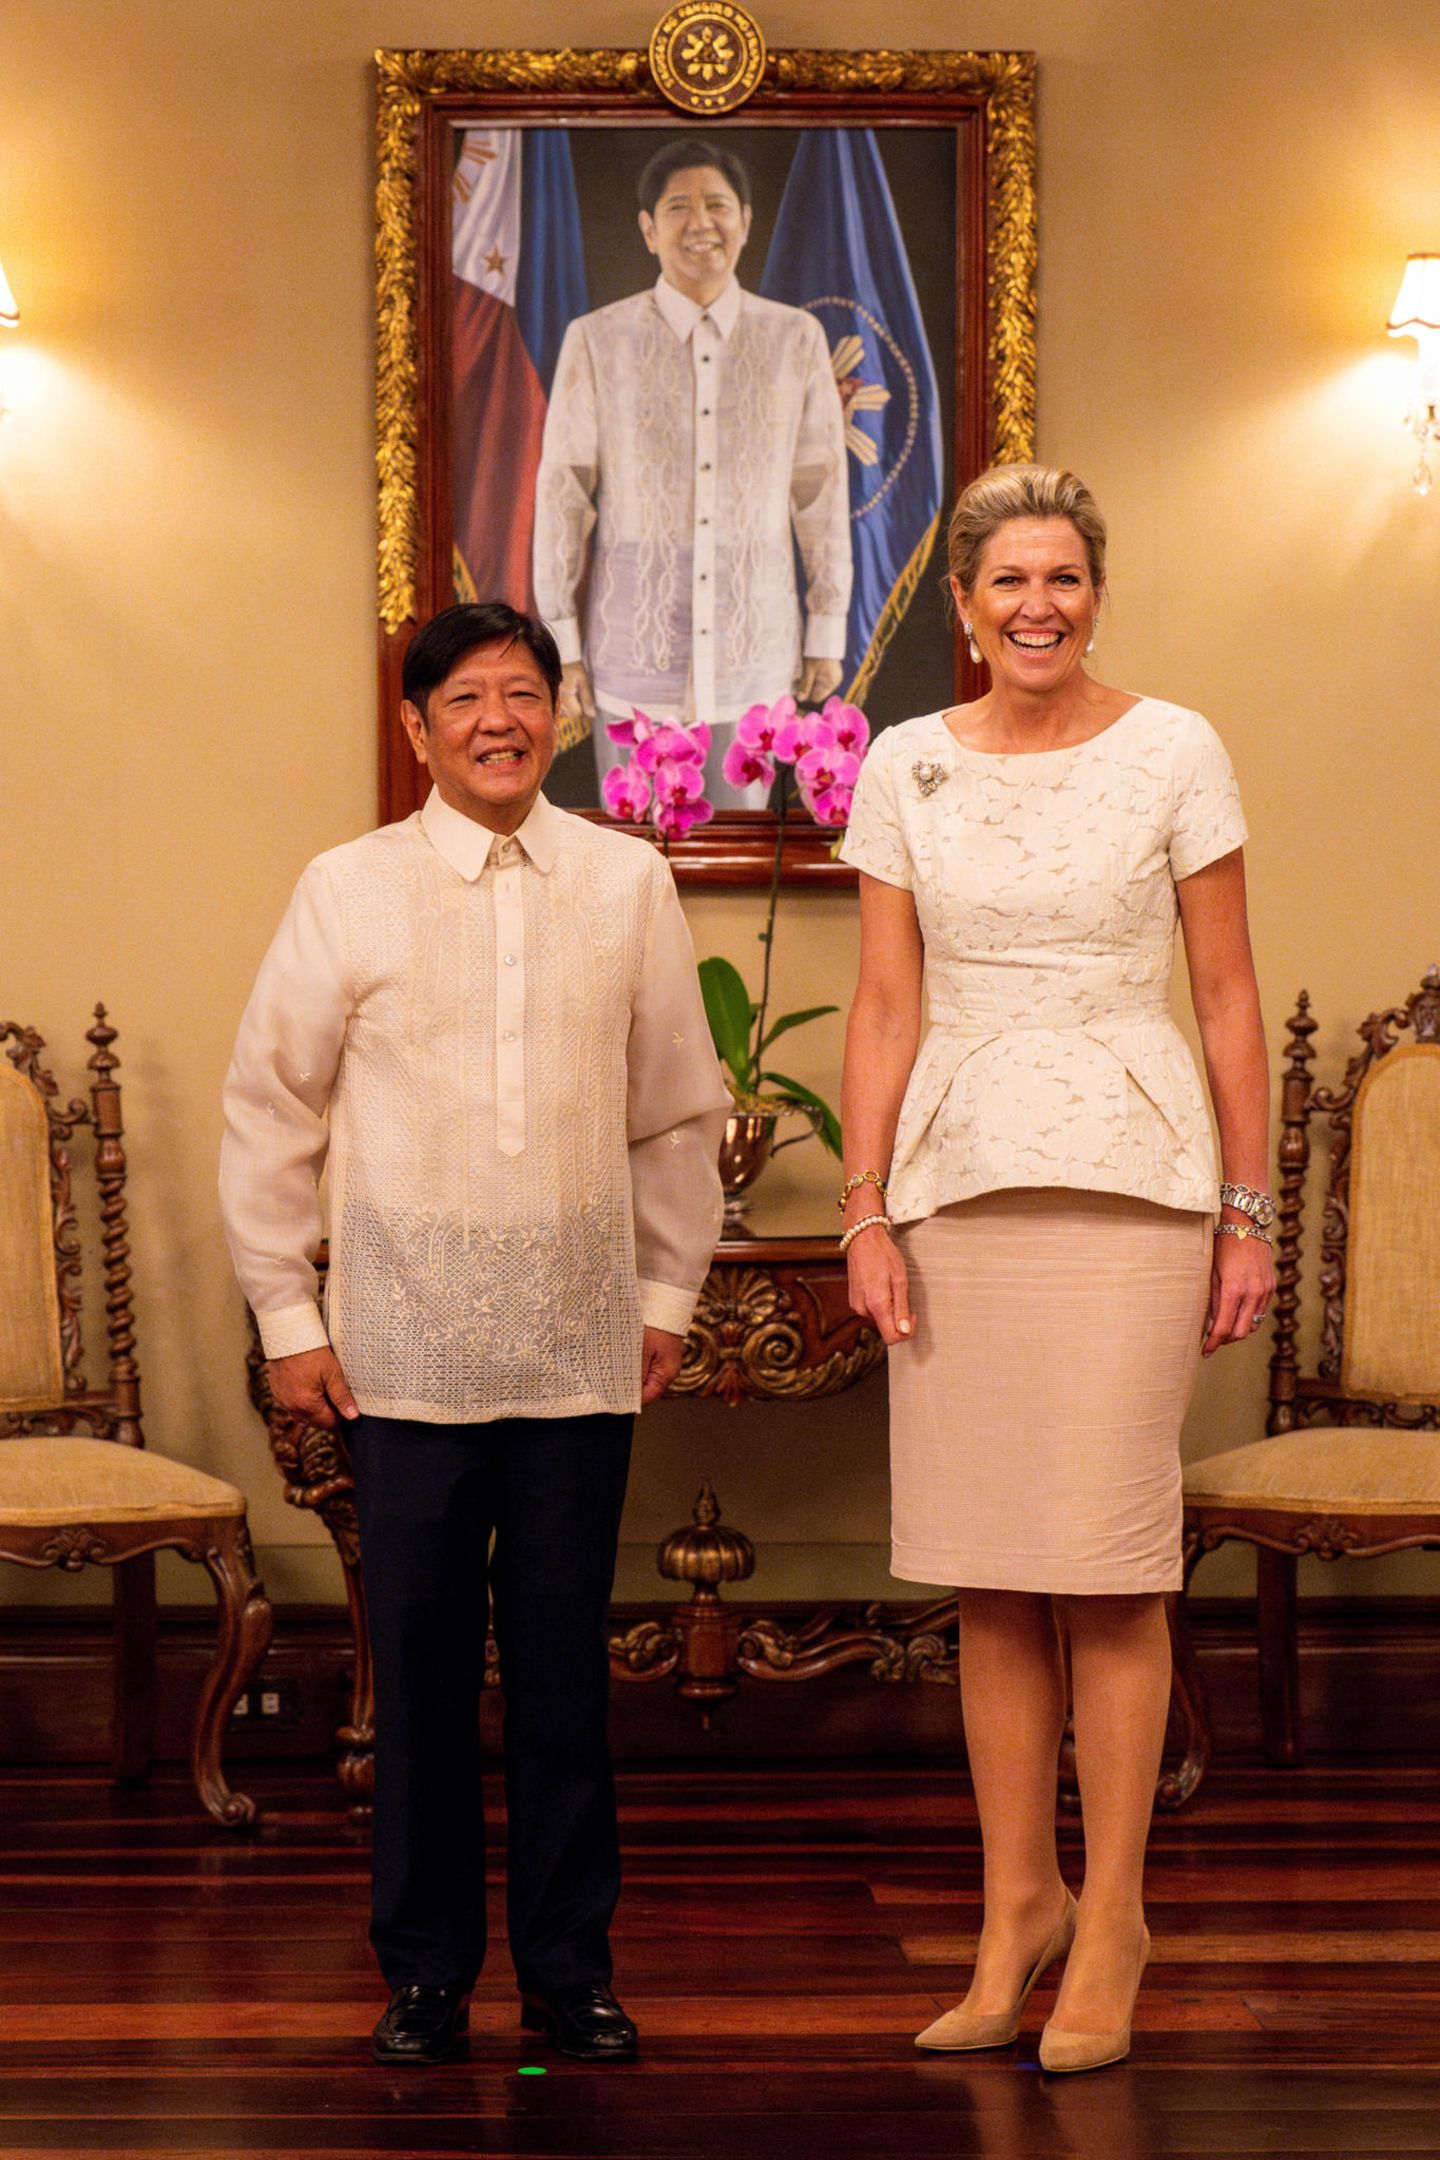 Königin Máxima zeigt bei ihrem Treffen mit dem philippinischen Präsidenten Ferdinand Marcos Jr. mal wieder, dass sie ein echtes Stil-Ass ist. Ihr cremefarbenes Schößchenoberteil mit zartem Blumenmuster lässt ihre blonden Haare geradezu engelsgleich strahlen. Das Outfit der Monarchin, sowohl schlicht als auch elegant, stimmt perfekt mit dem traditionellen Gewand des Präsidenten überein. Ein gekonnter Mix aus Diplomatie und modischem Fingerspitzengefühl!